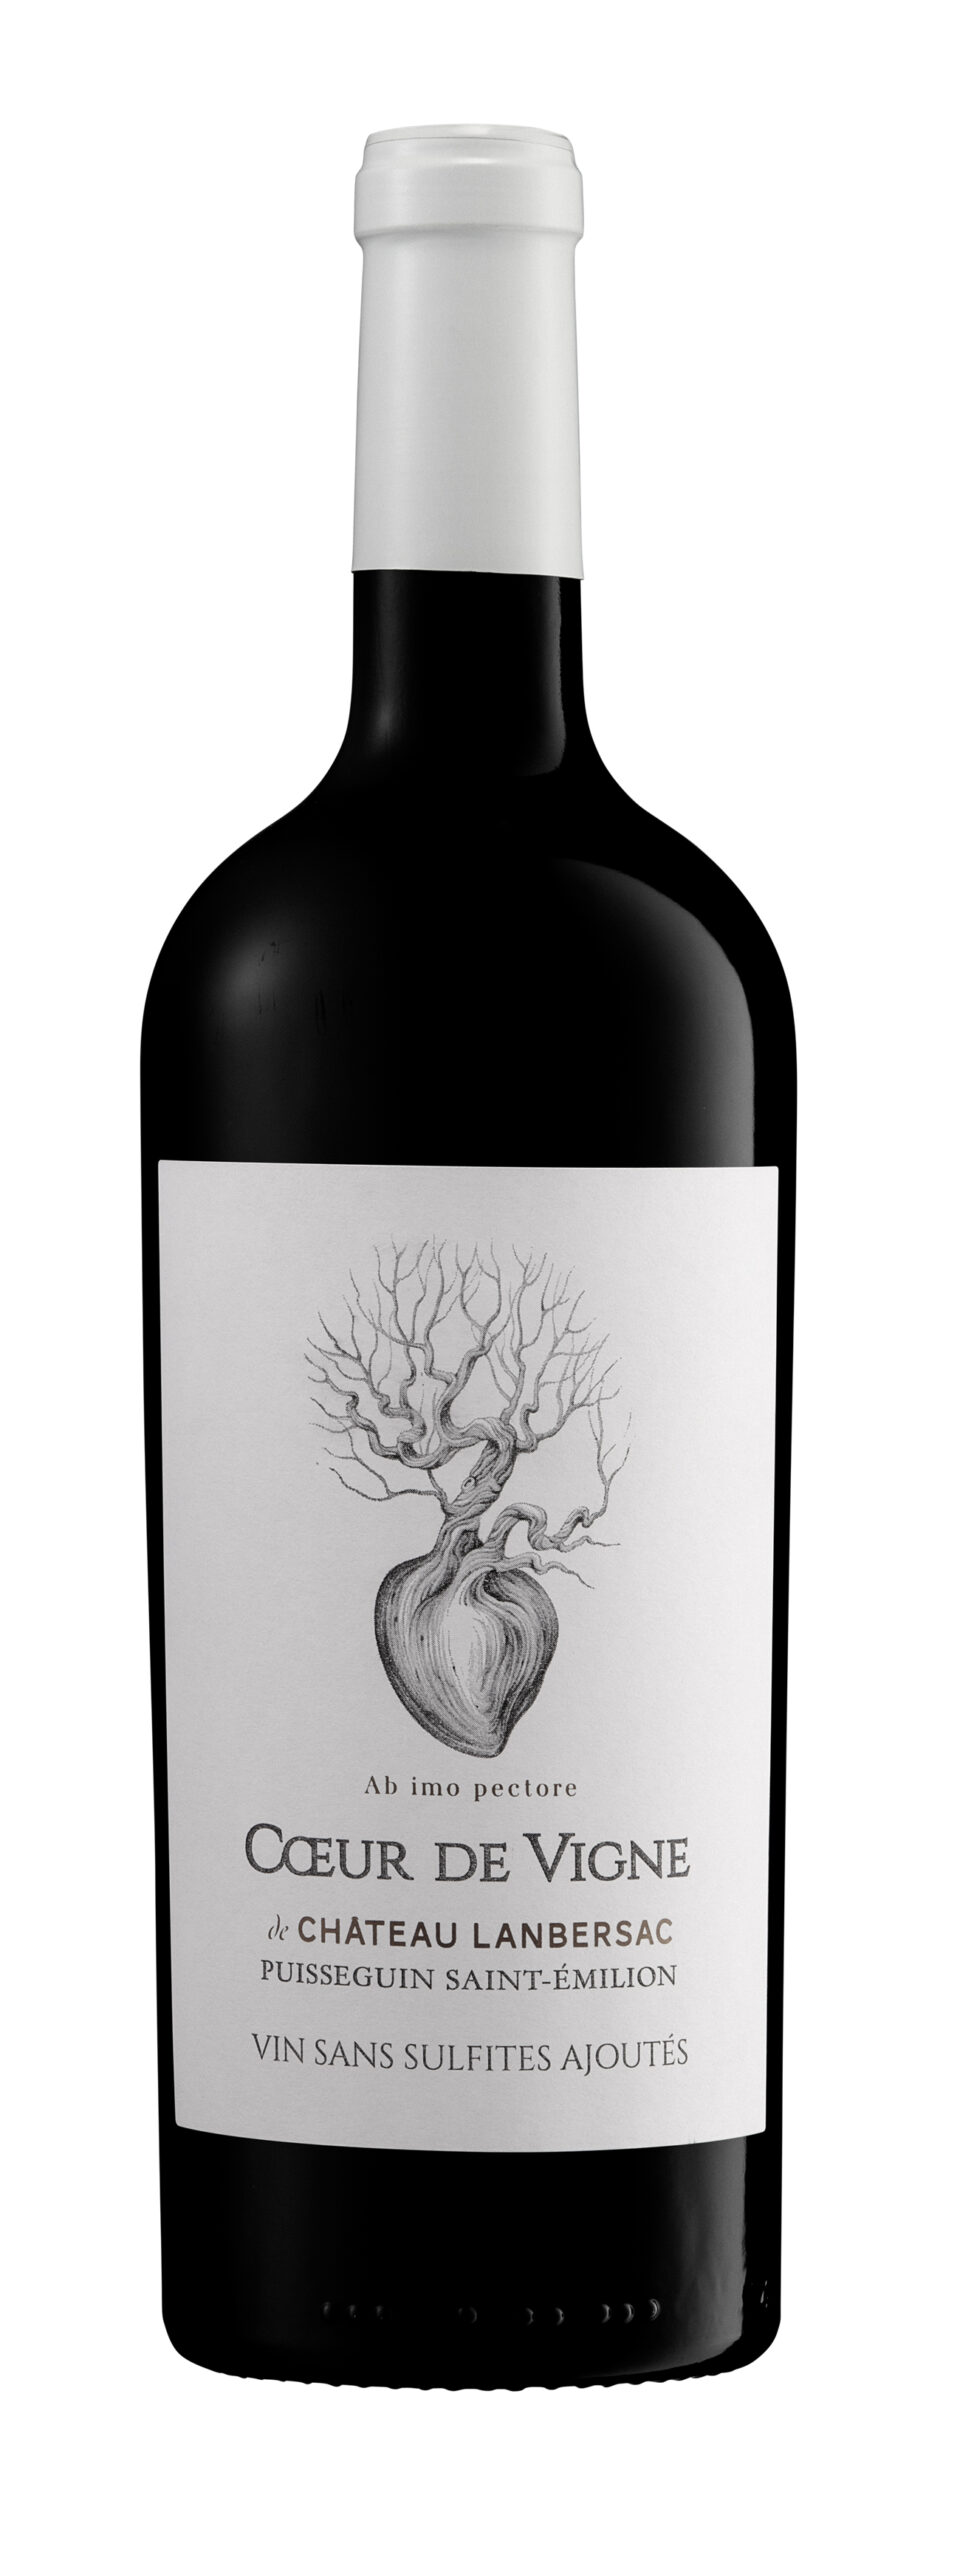 Coeur de vigne by Château Lanbersac – Puisseguin Saint-Emilion 2019